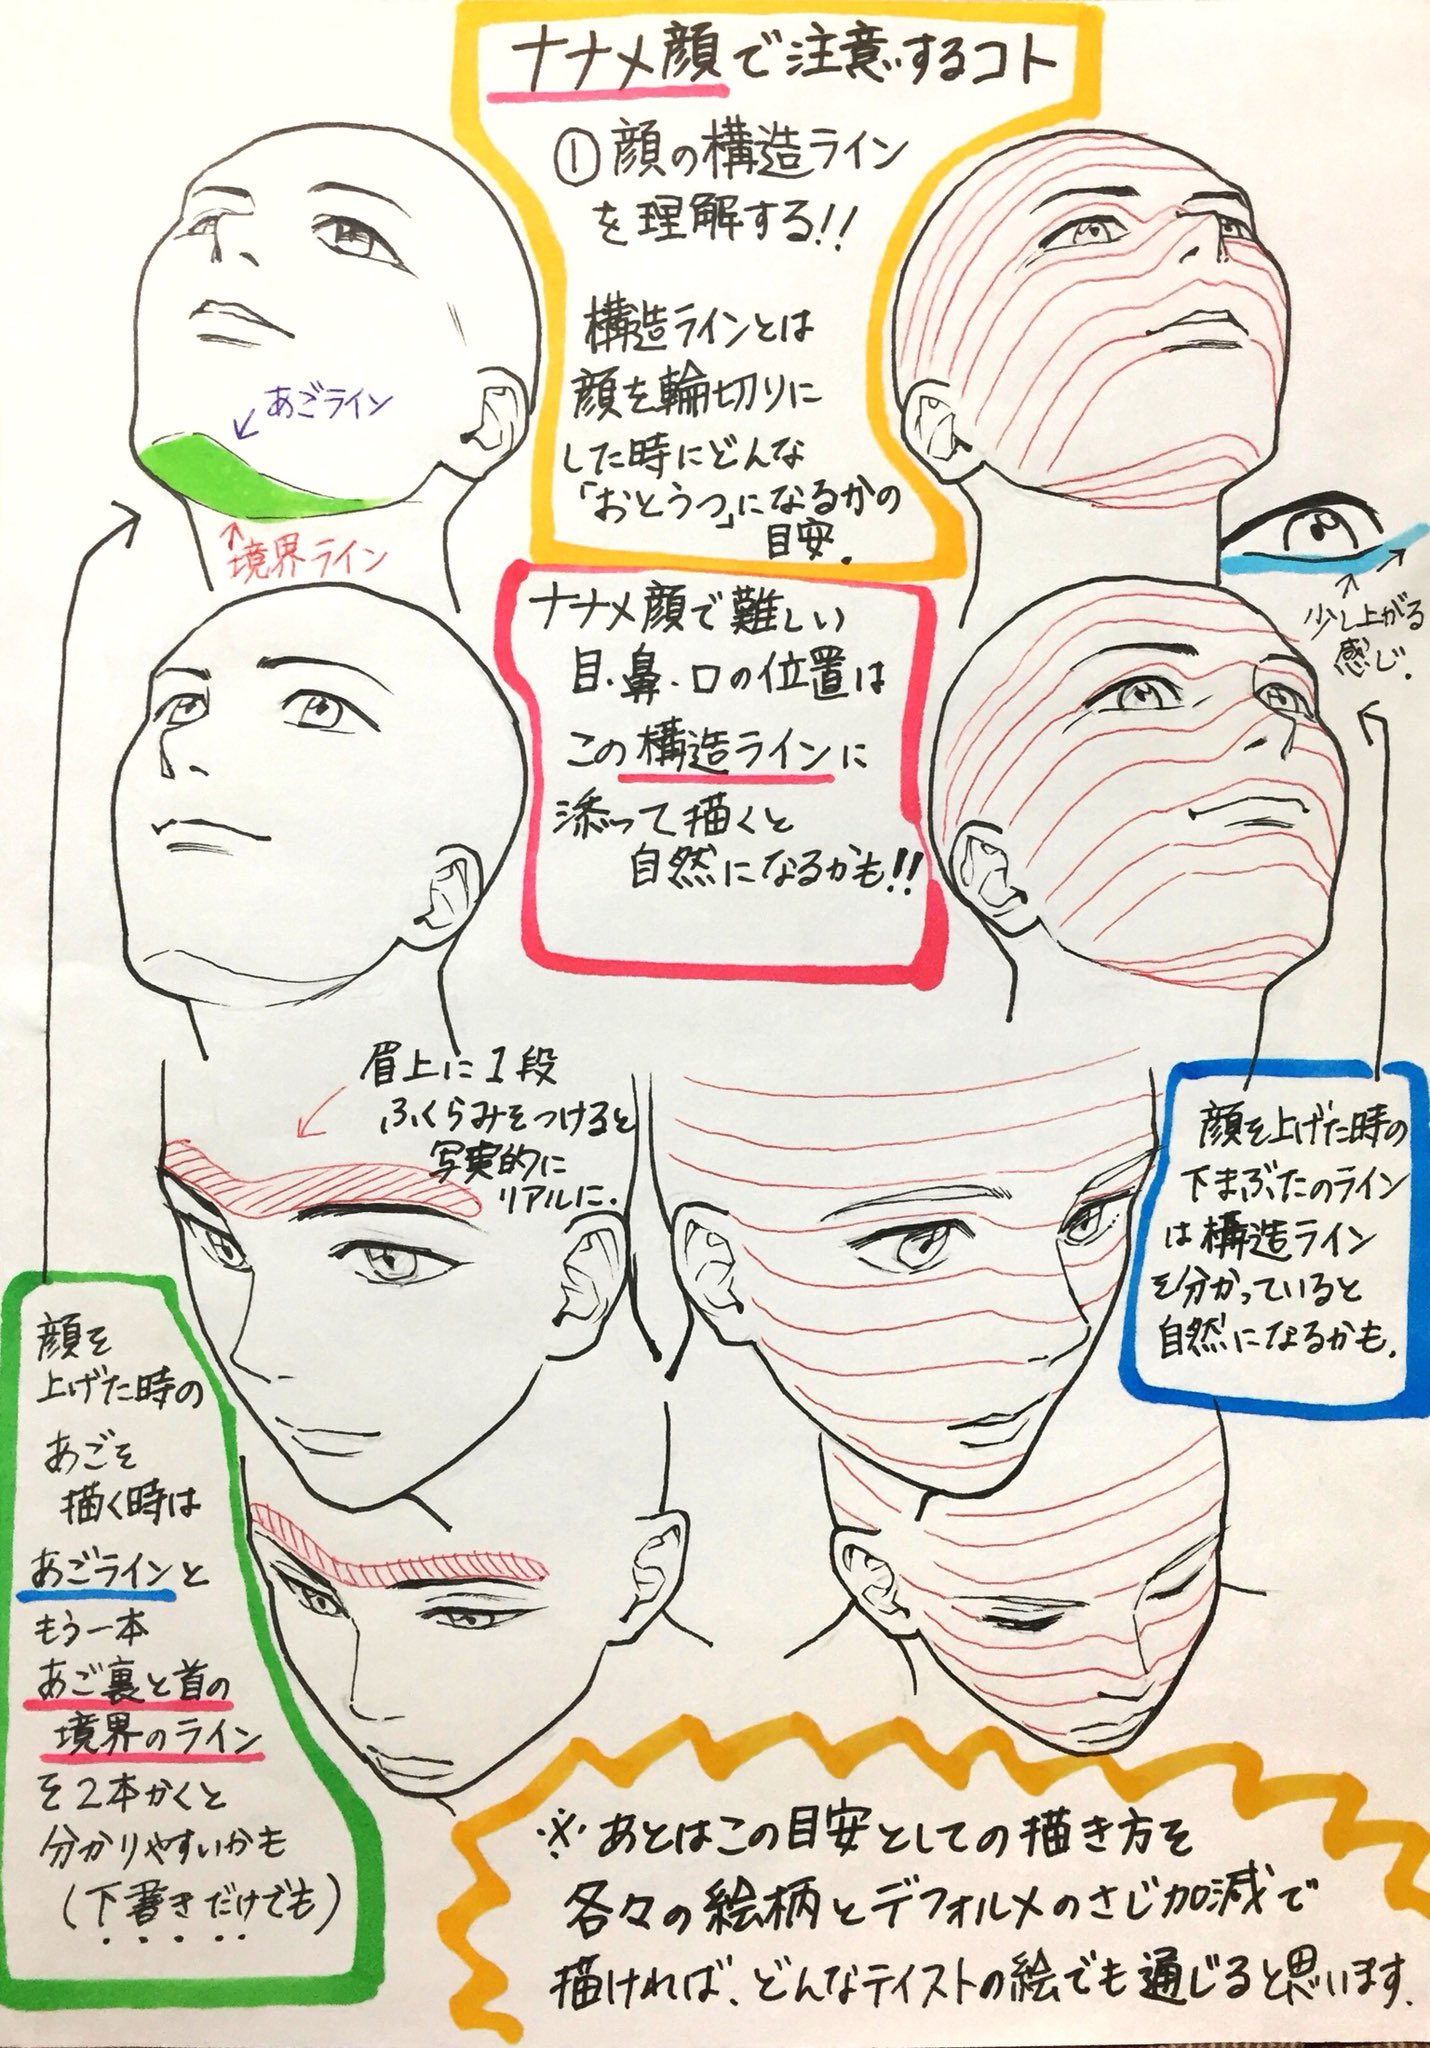 Twitter 上的 吉村拓也 イラスト講座 イラスト初心者 でも分かる 顔のパーツの描き方 いろんなアングルの顔 を 描くときの マニュアル です T Co Skwzalbtt1 Twitter